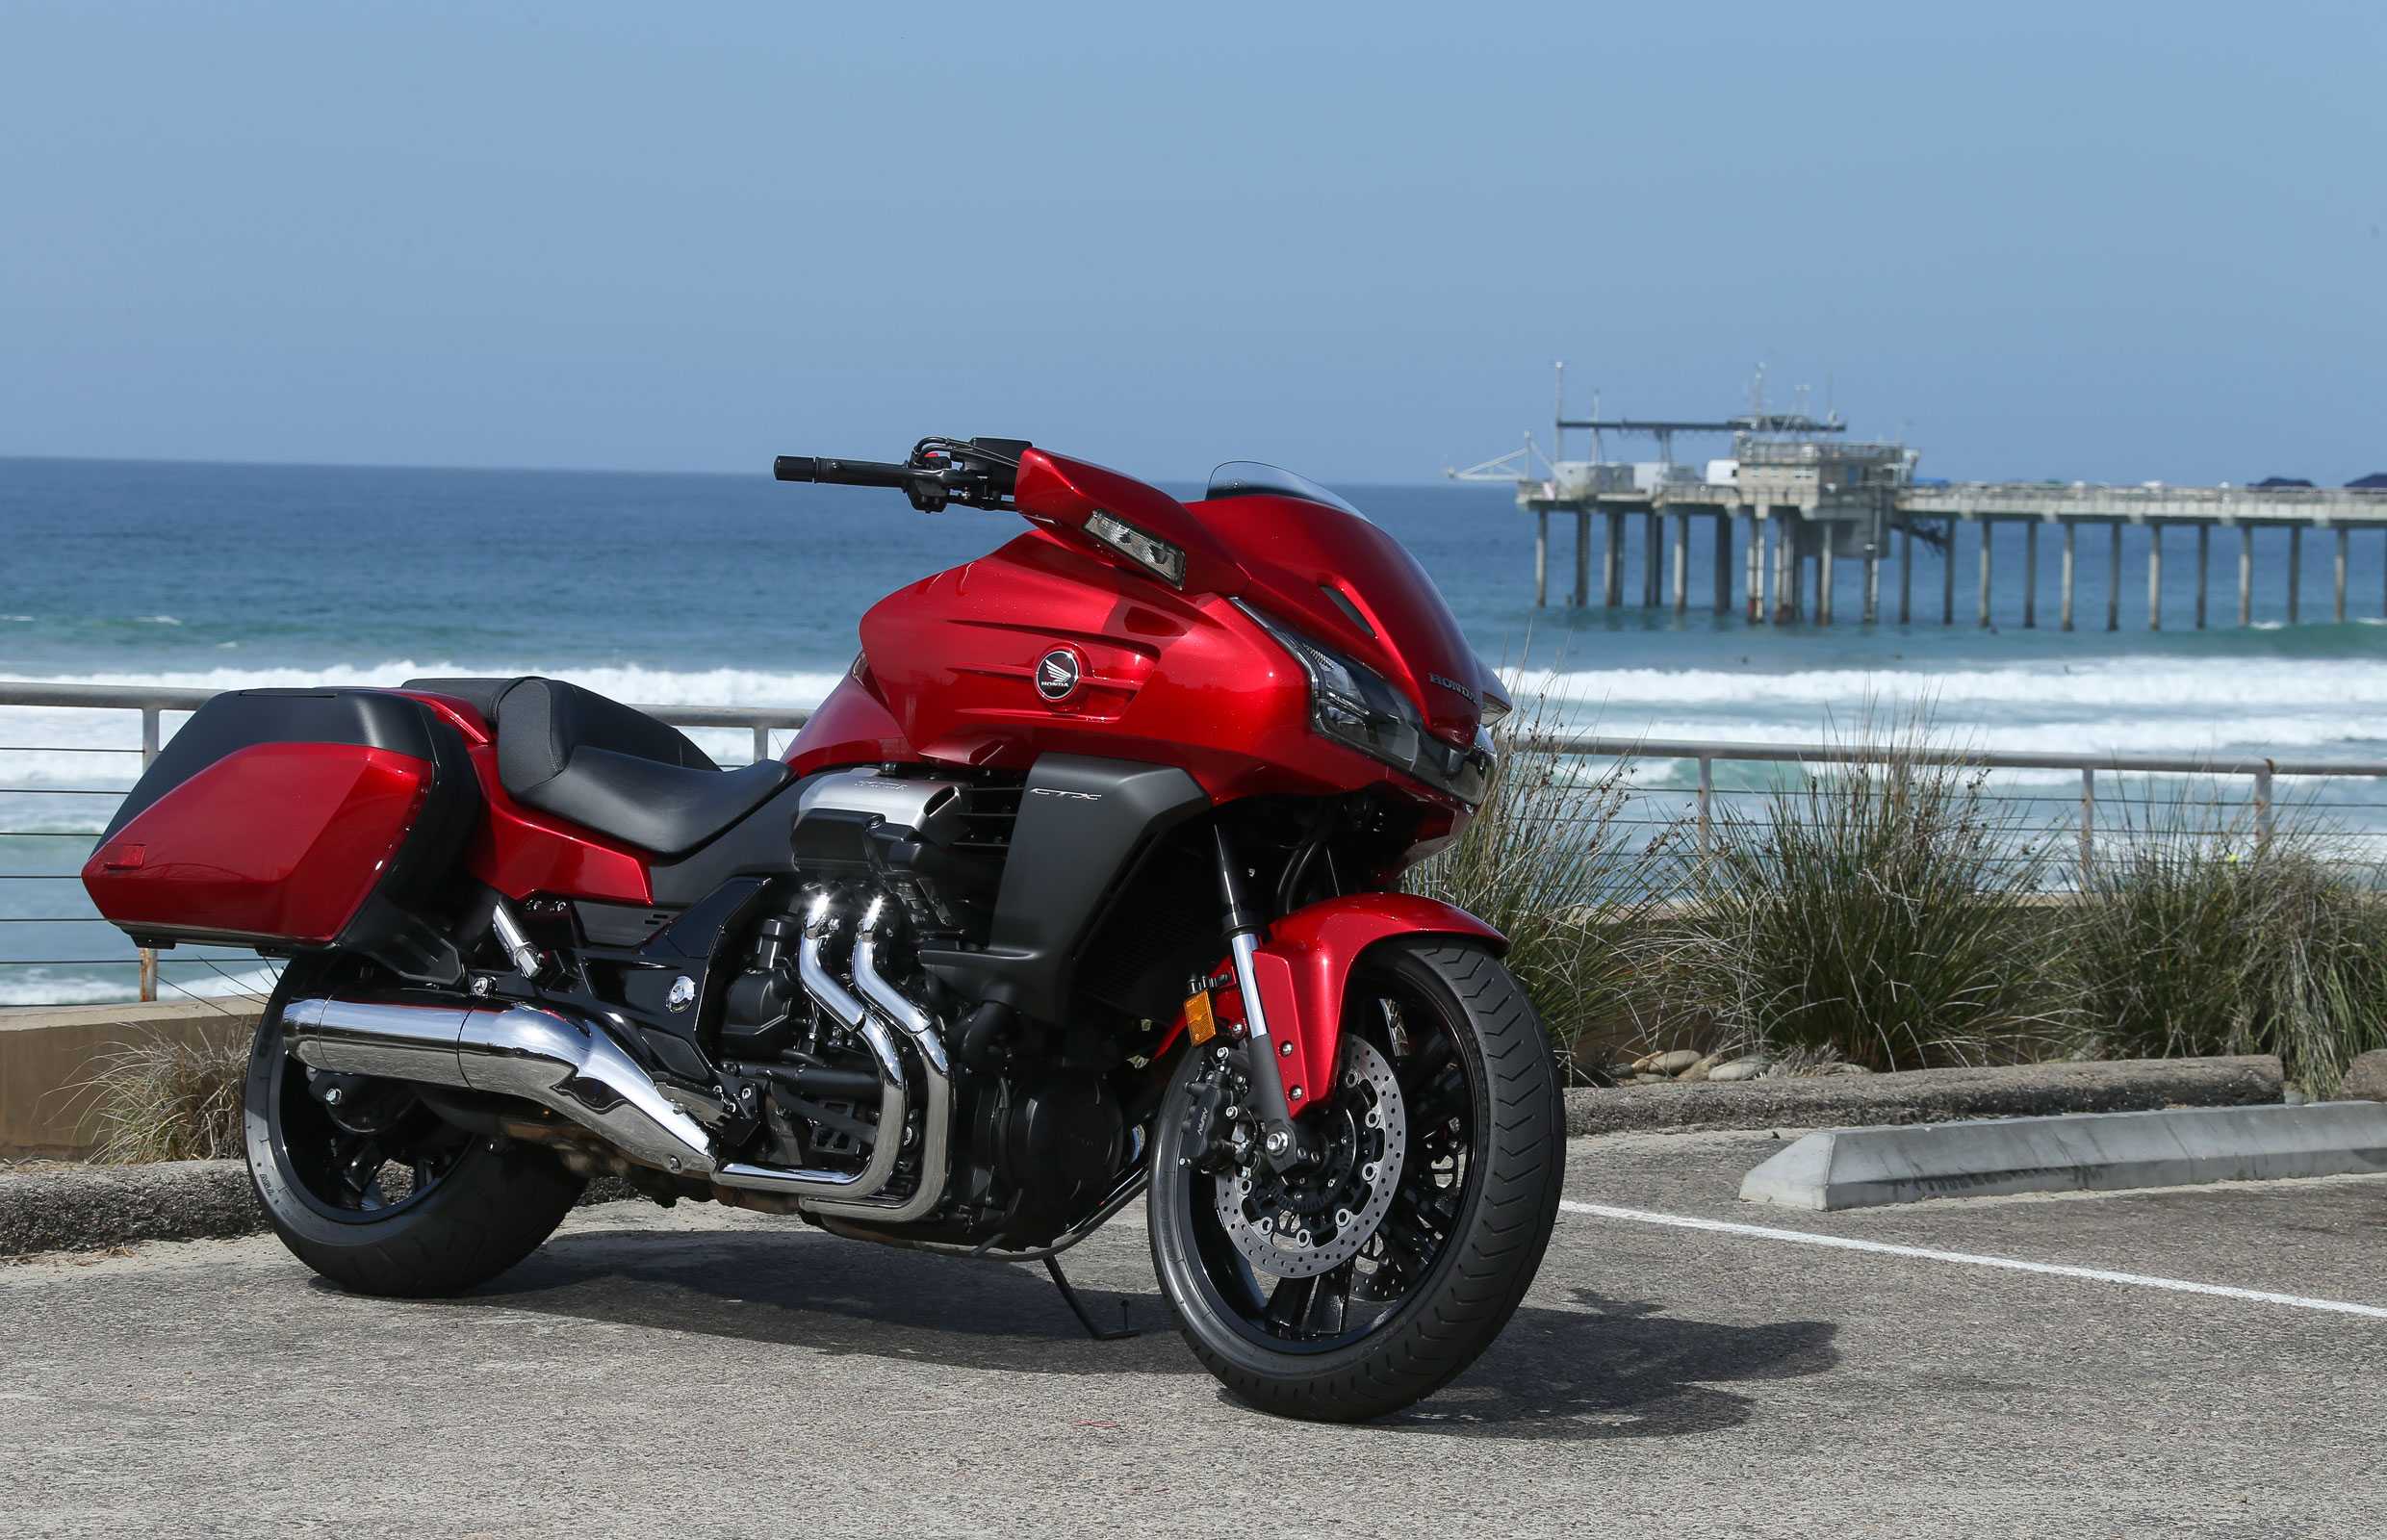 Мотоцикл хонда стх 1300 - прекрасный выбор для любителей туризма